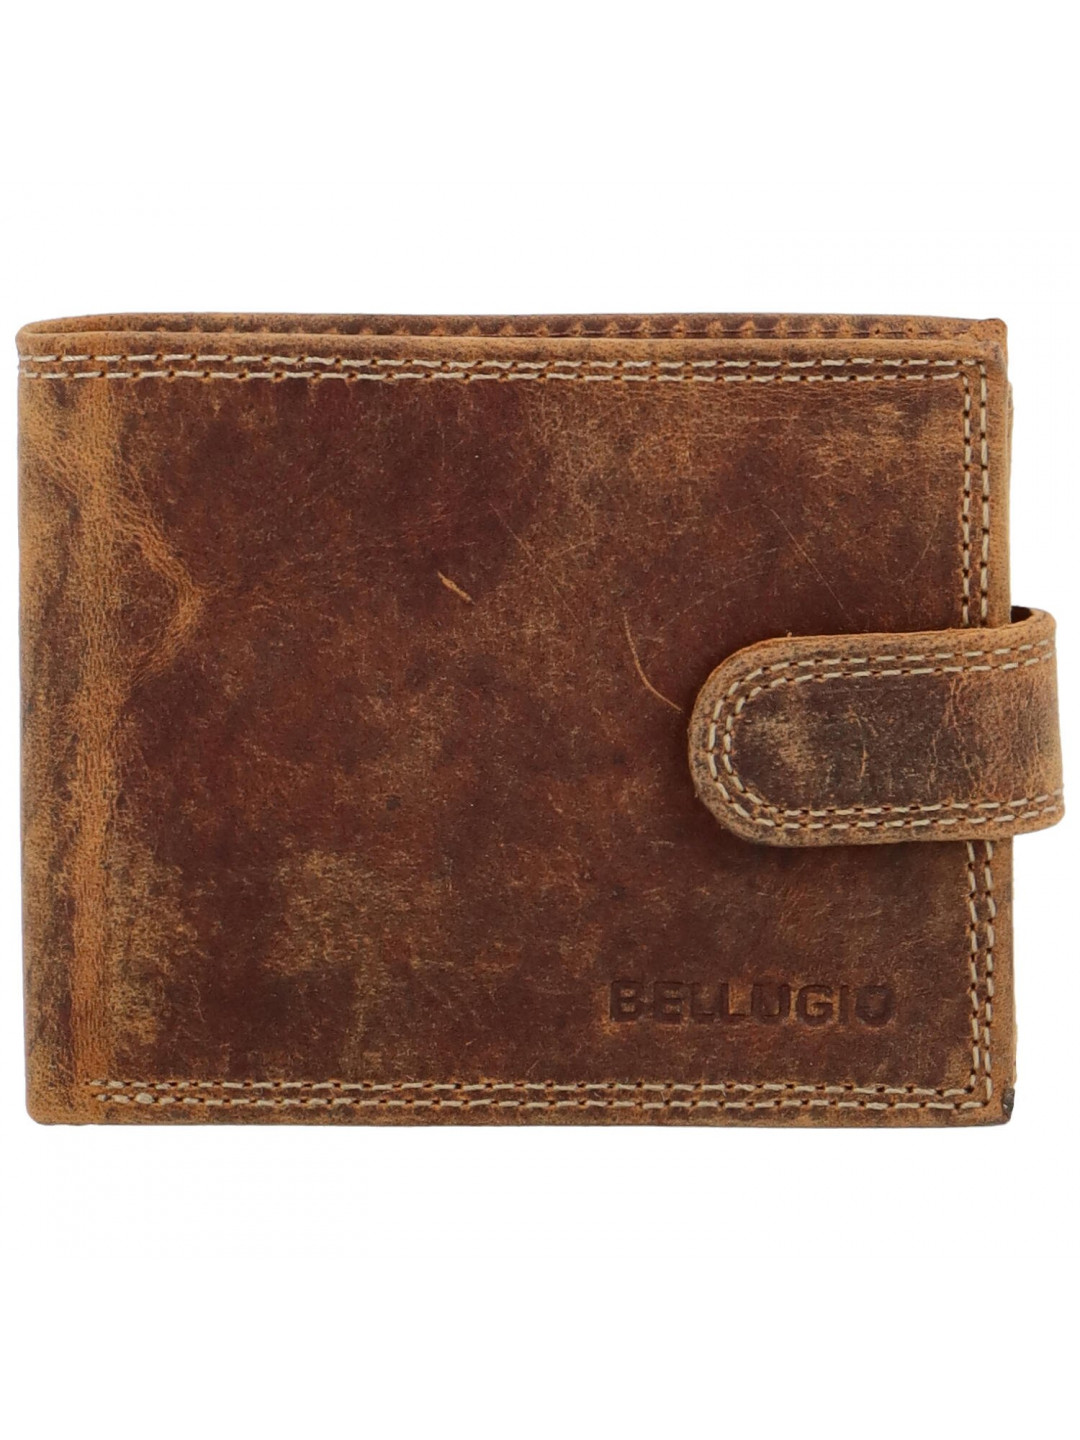 Pánská kožená peněženka světle hnědá – Bellugio Lokys